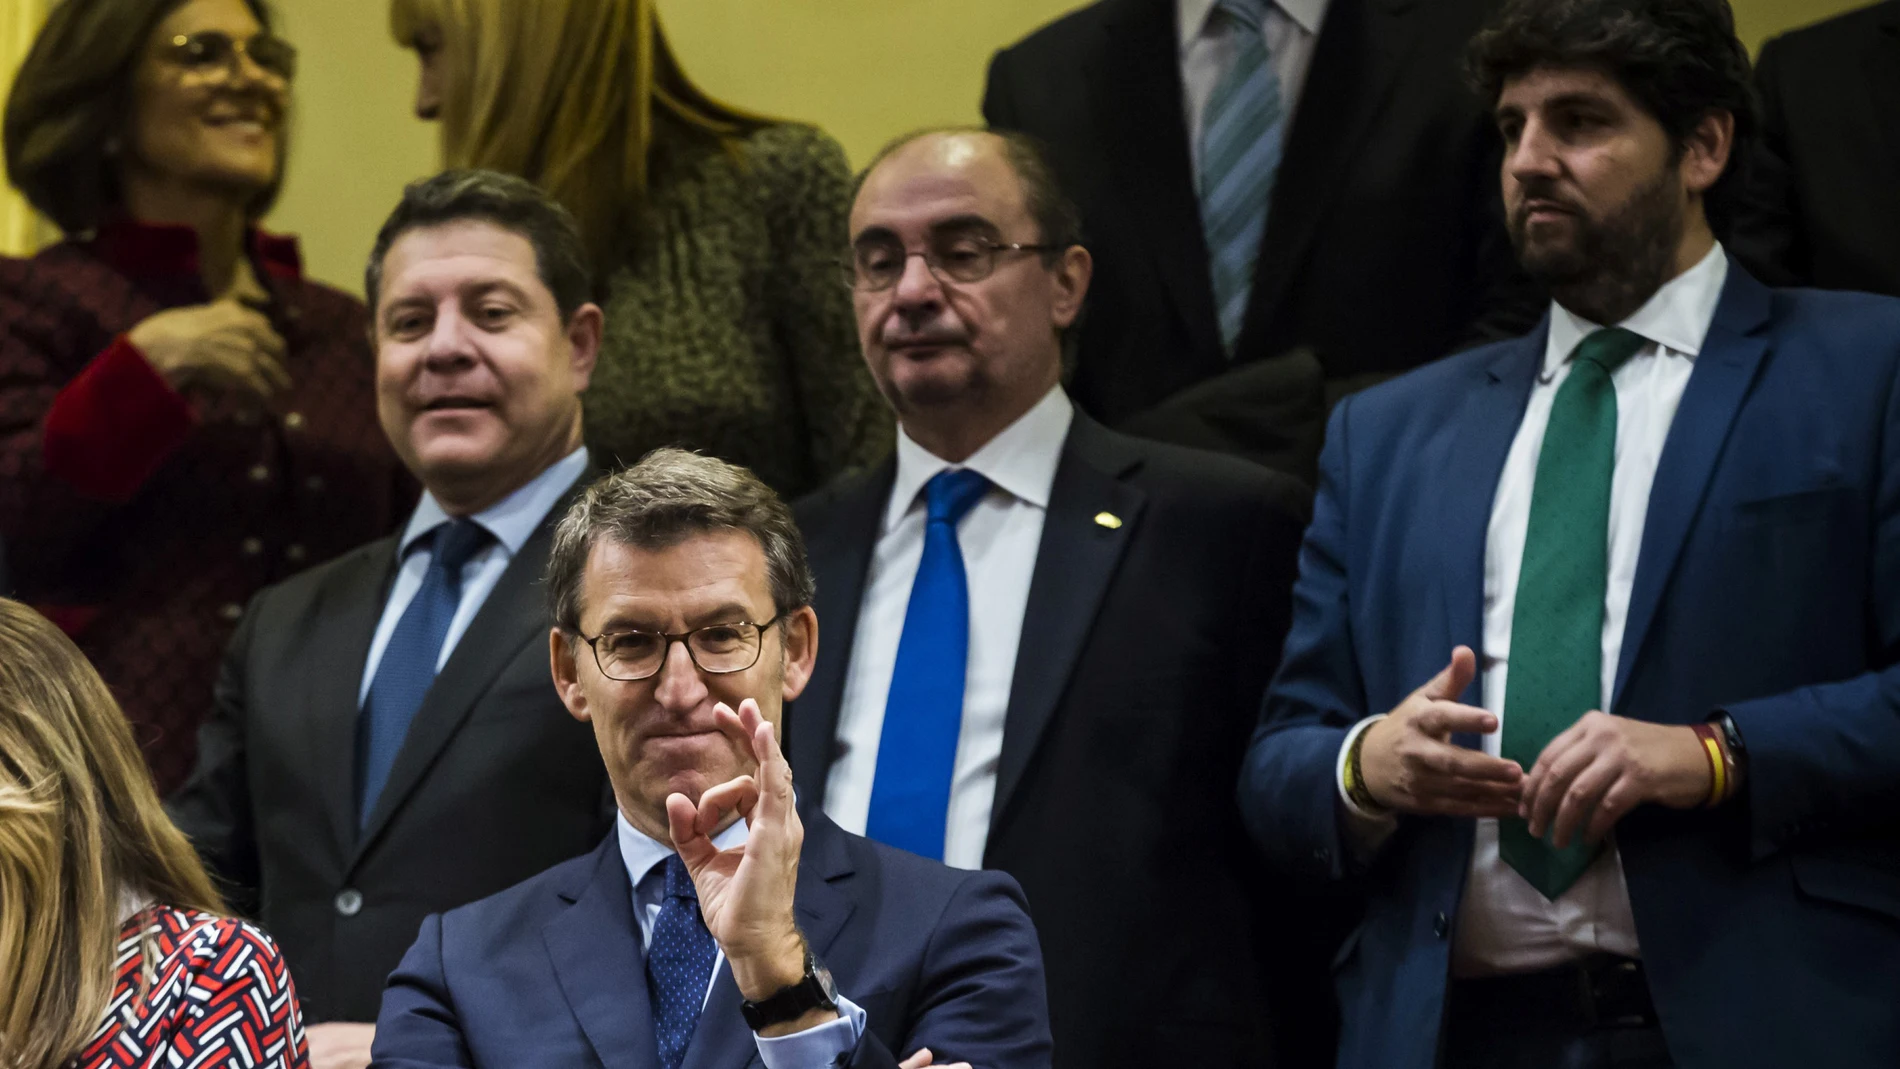 Feijóo, Page, Lambán y López Miras, en la tribuna de invitados del Congreso durante la sesión de investidura de Sánchez en enero / Alberto R. Roldán